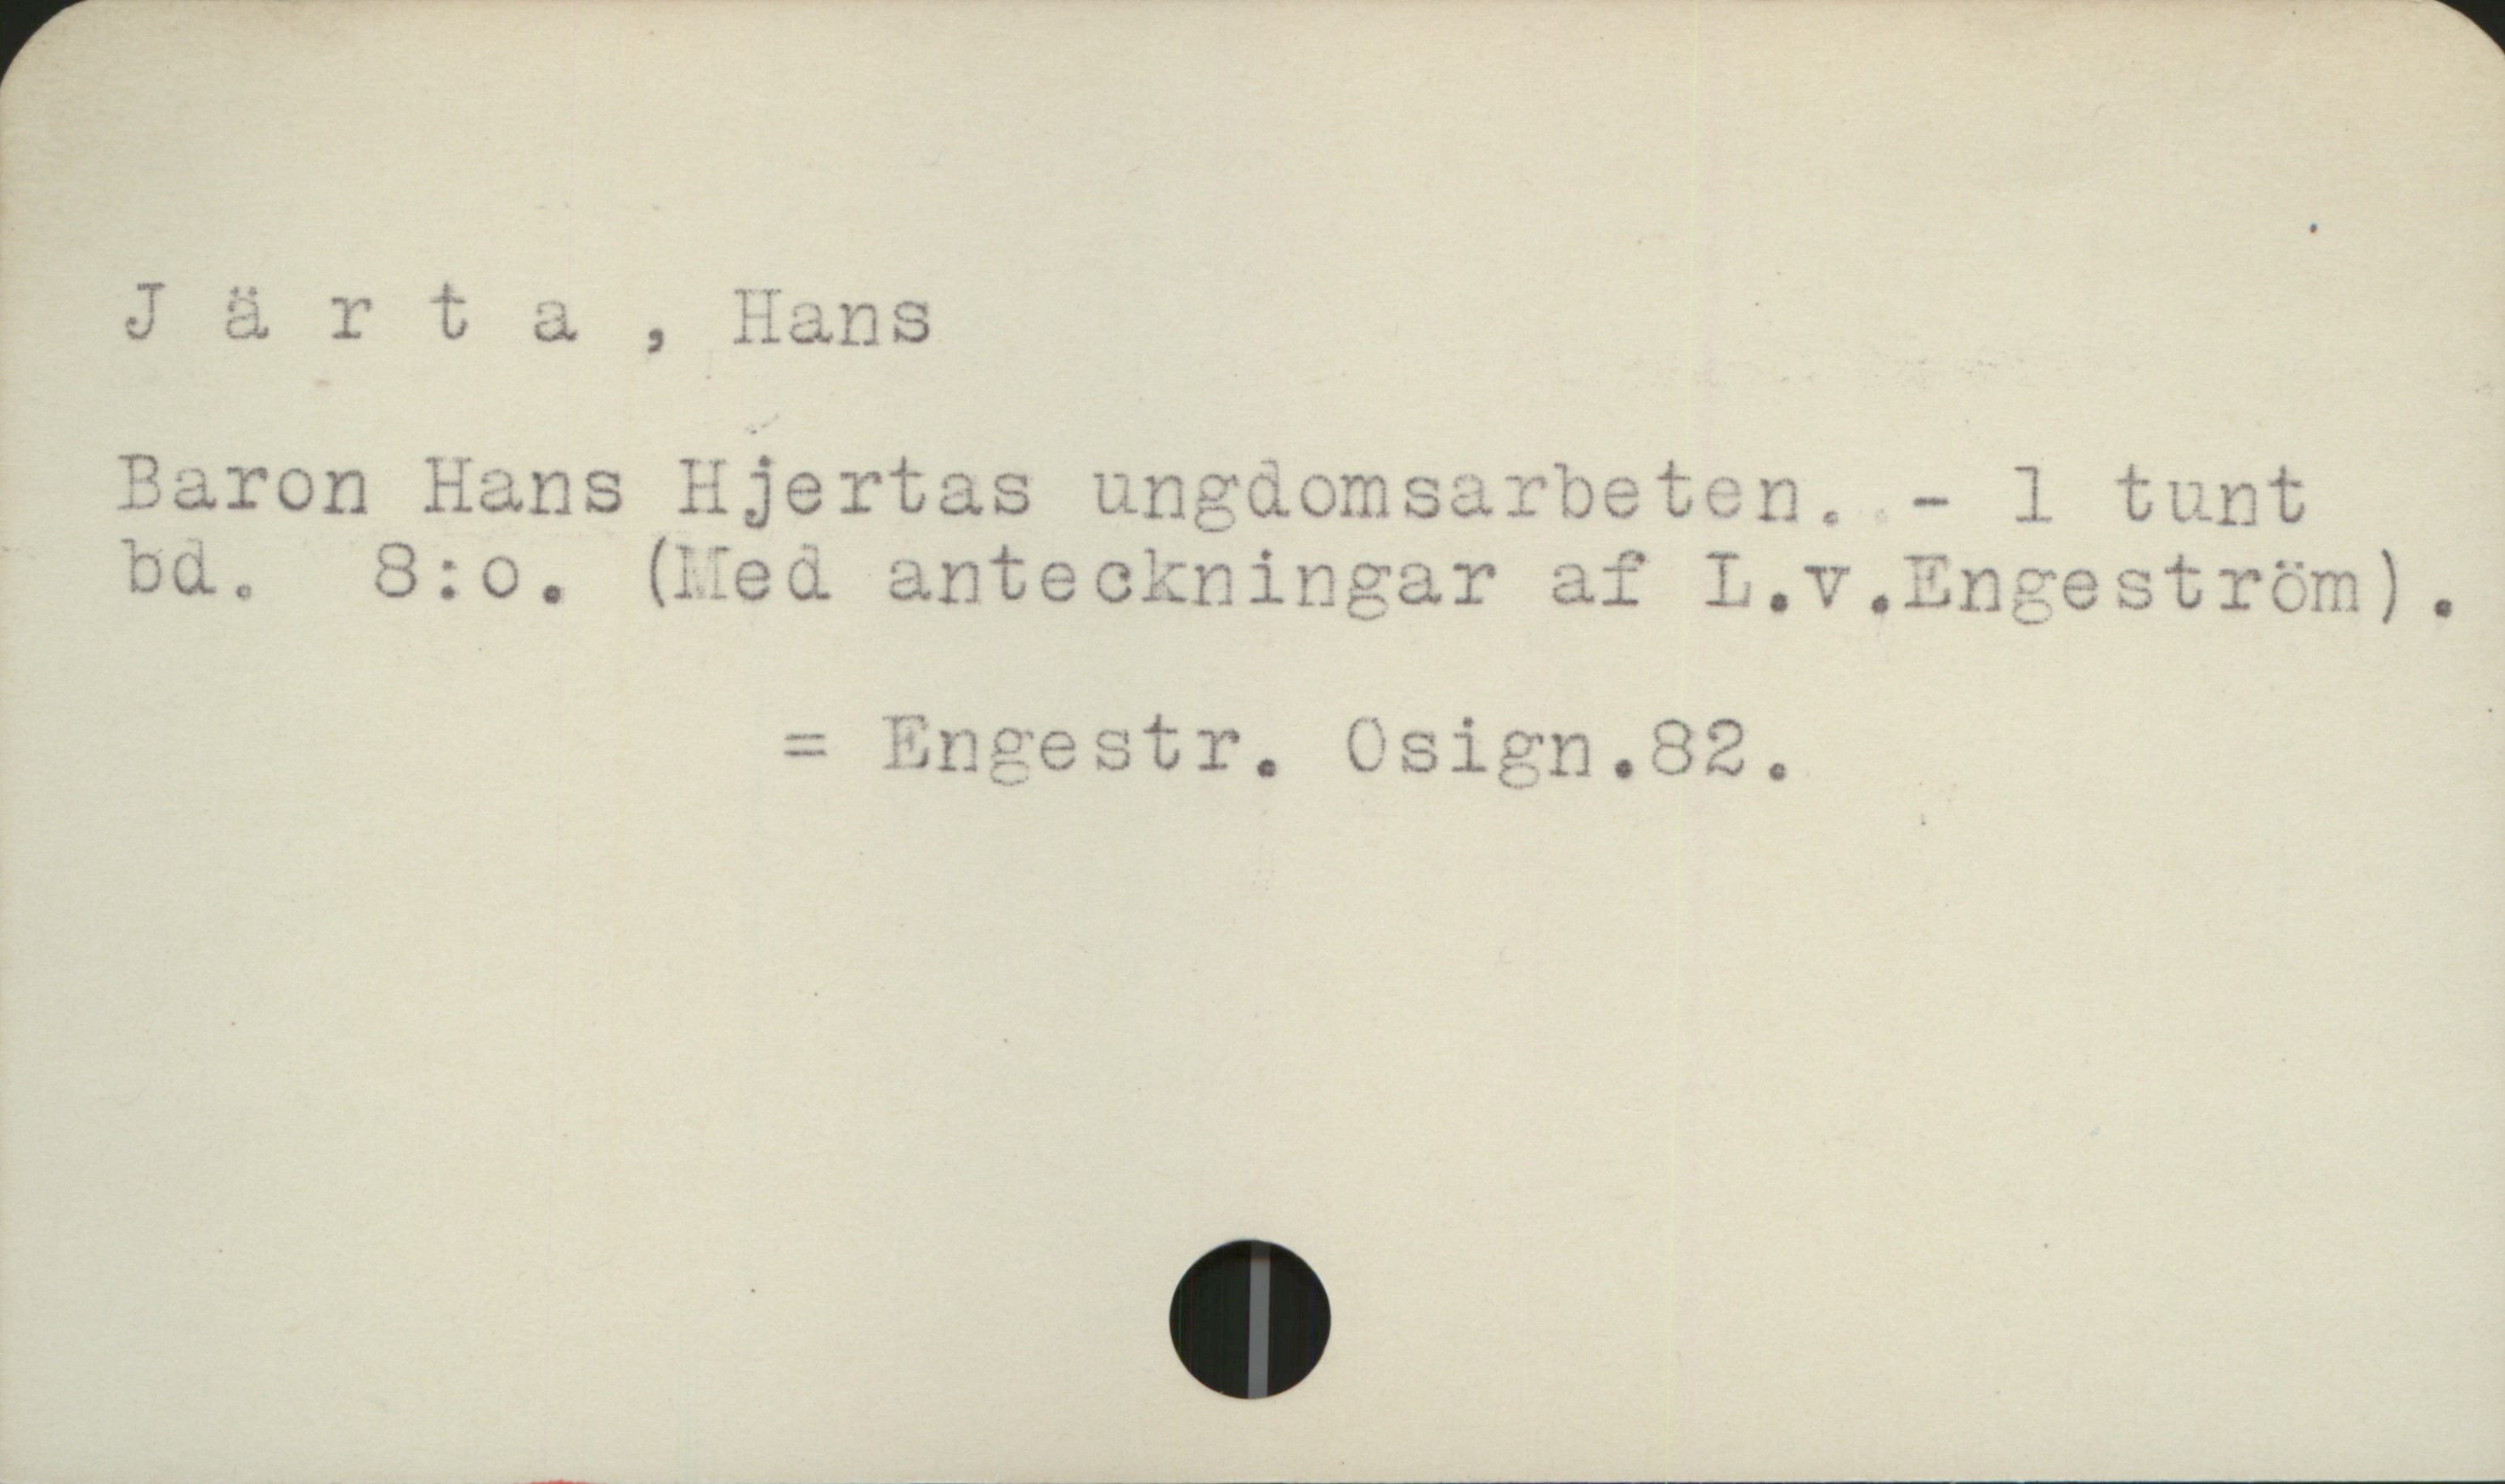 Järta, Hans (1774-1847) Järta, Hans

Baron Hans Hjertas ungdomsarbeten.  1 tunt
bd.    8:o   (Med anteckningar af L. v. Engeström)

                      =  Engestr. Osign. 82